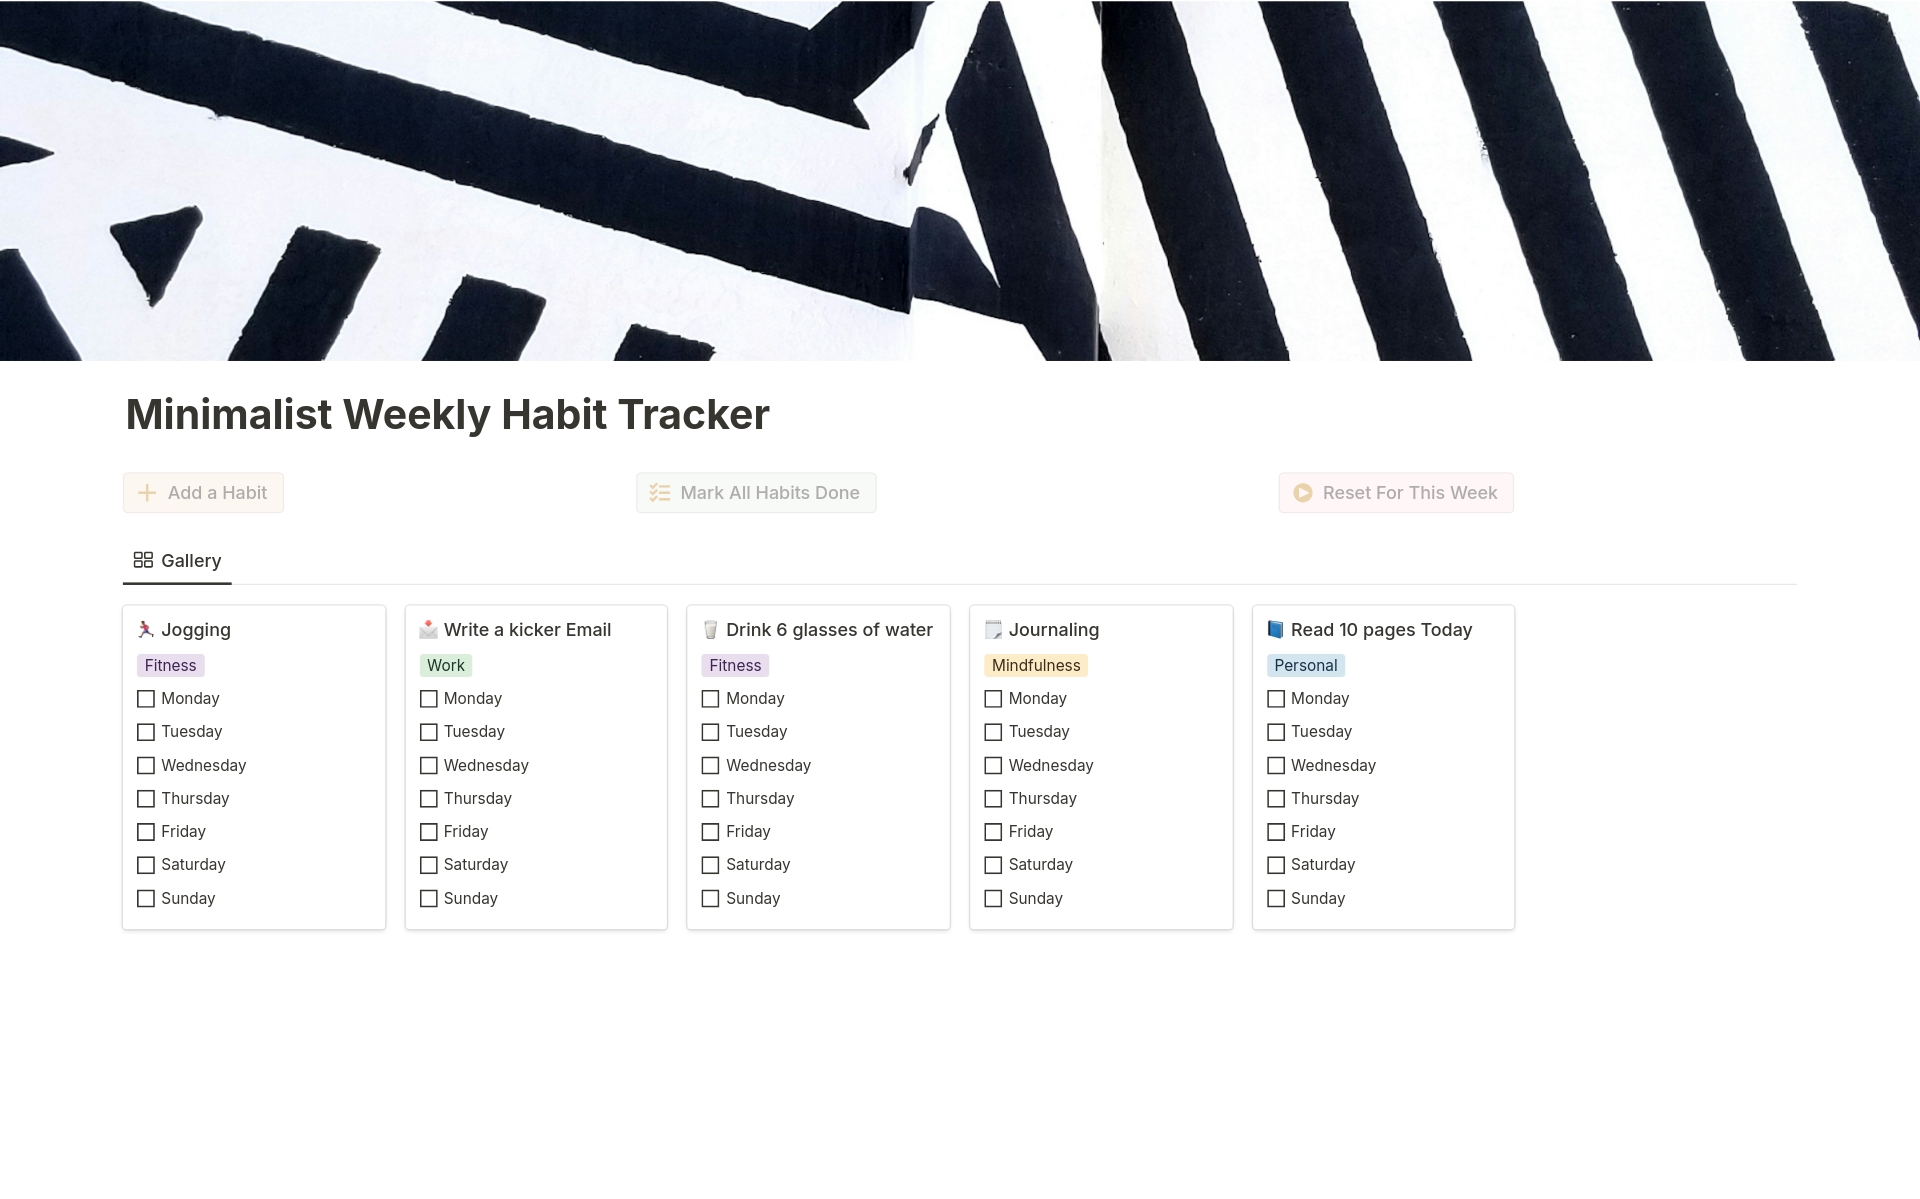 Vista previa de plantilla para Minimalist Weekly Habit Tracker